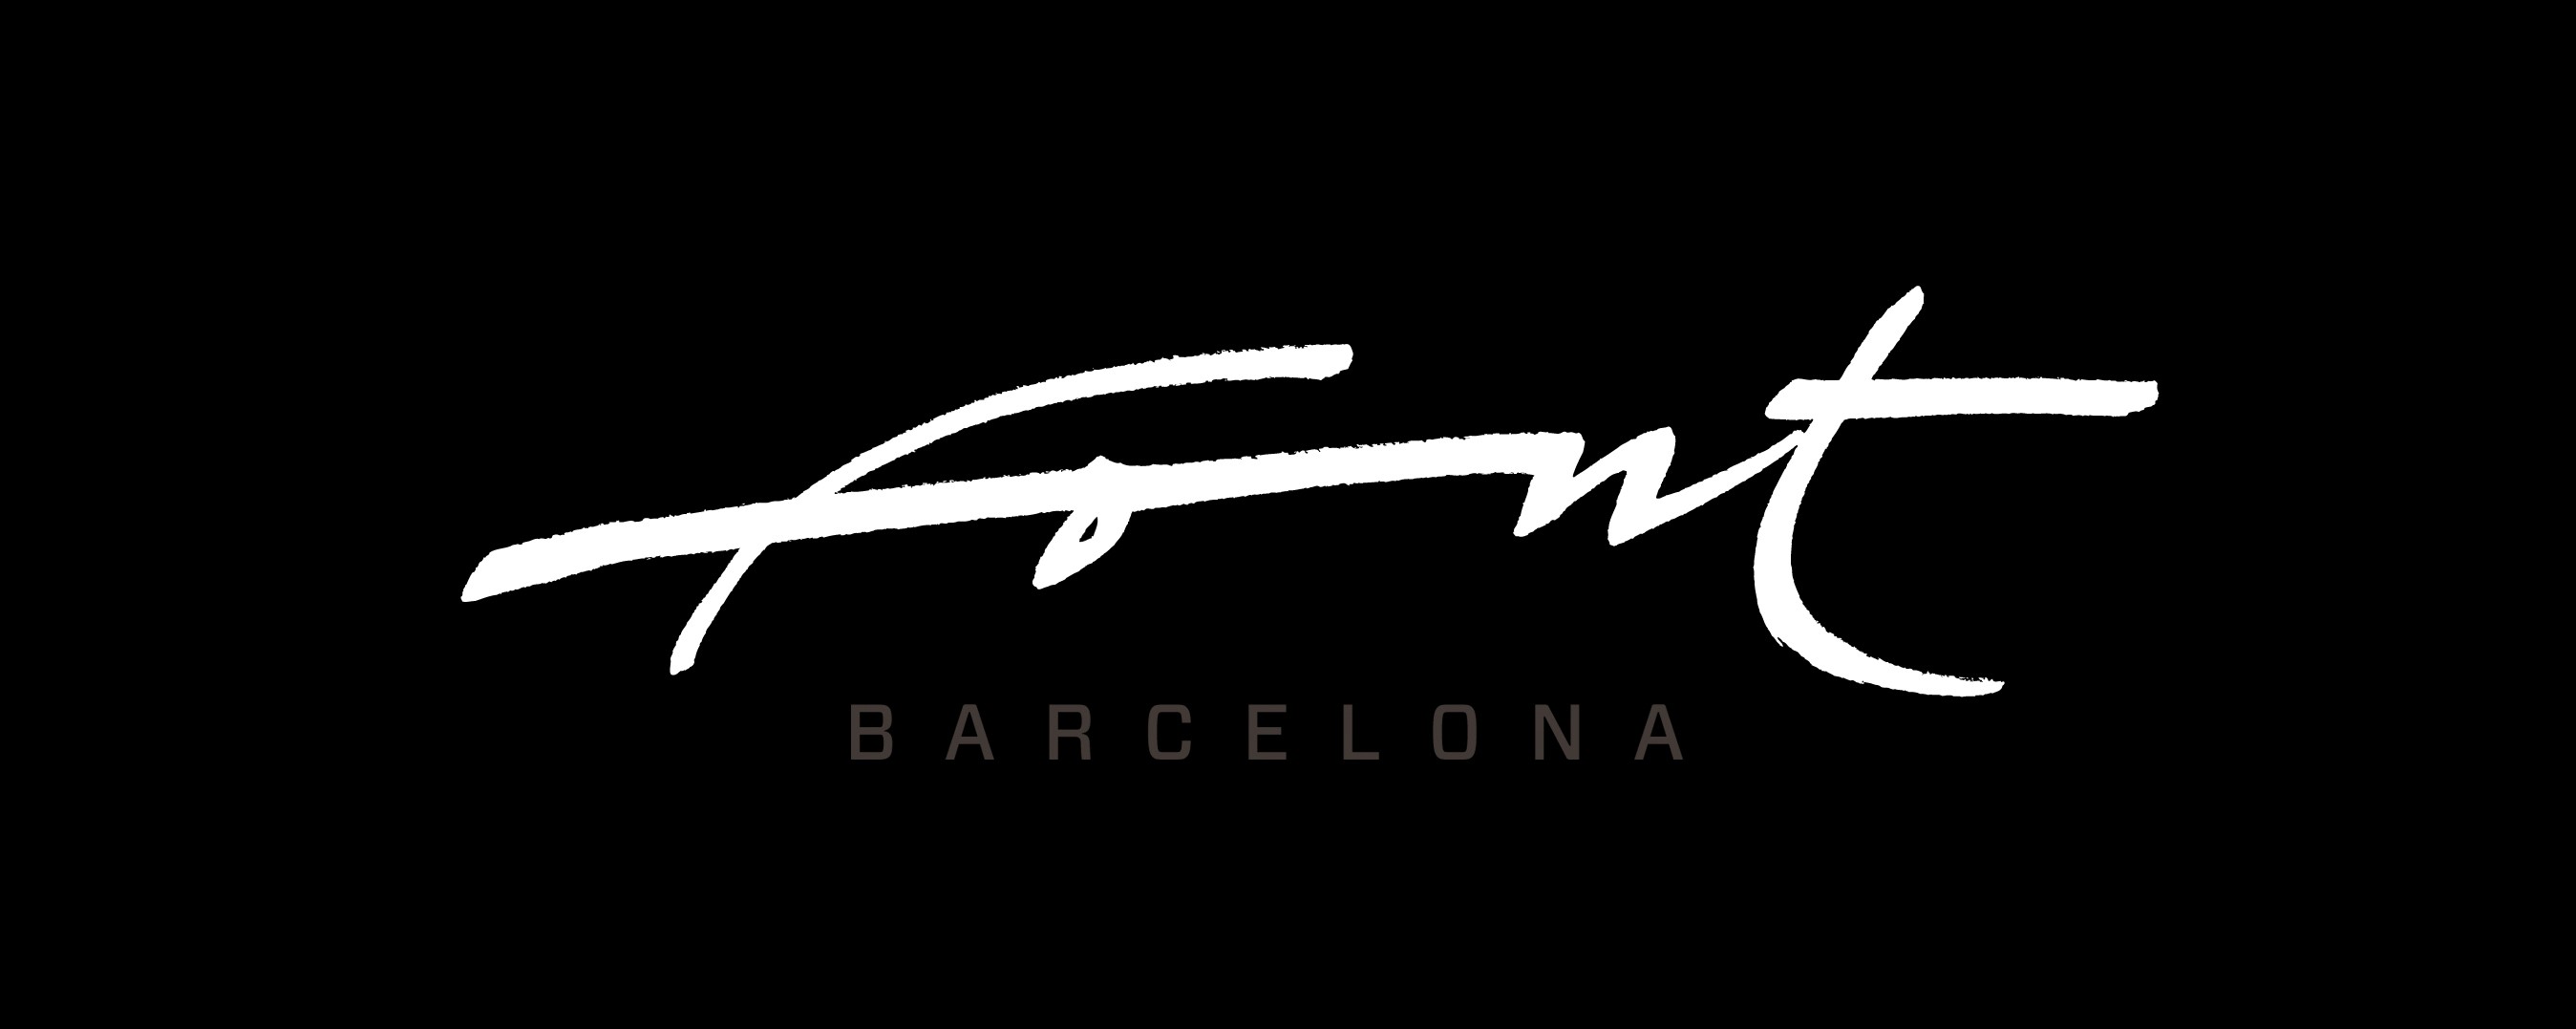 Font Barcelona